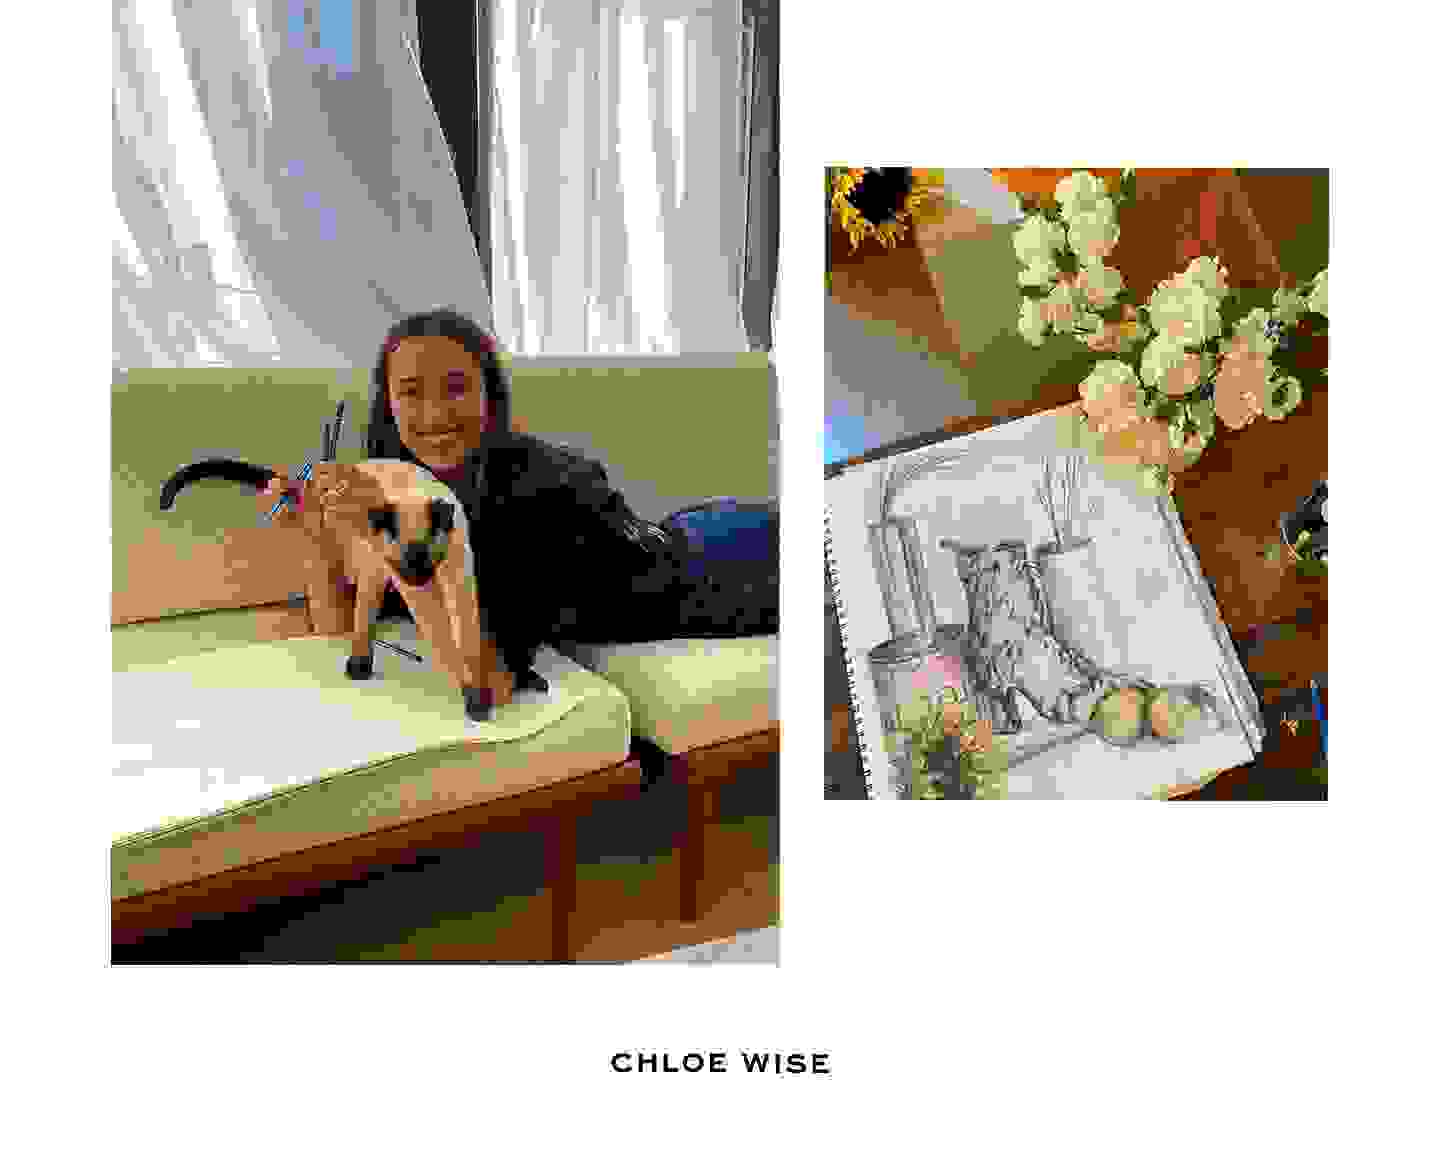 Chloe Wise